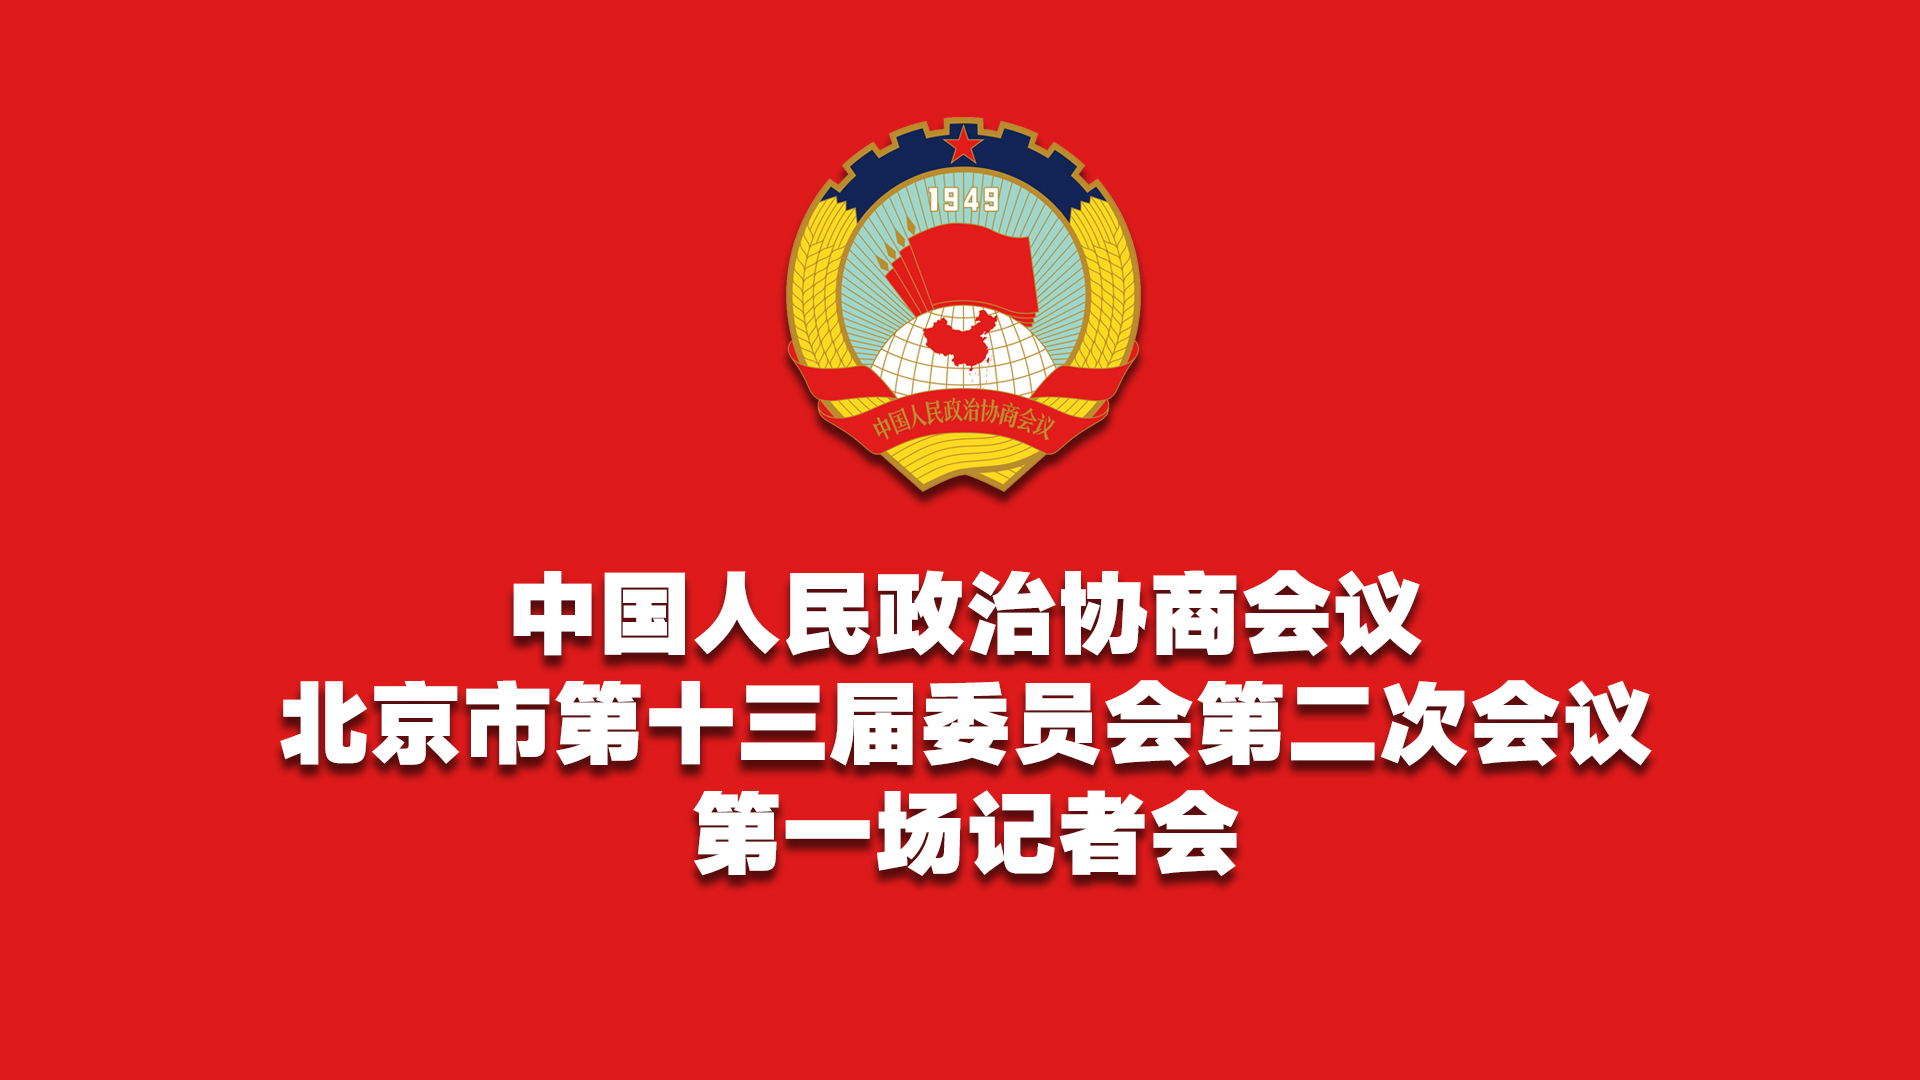 北京市政协十三届二次会议第一场记者会